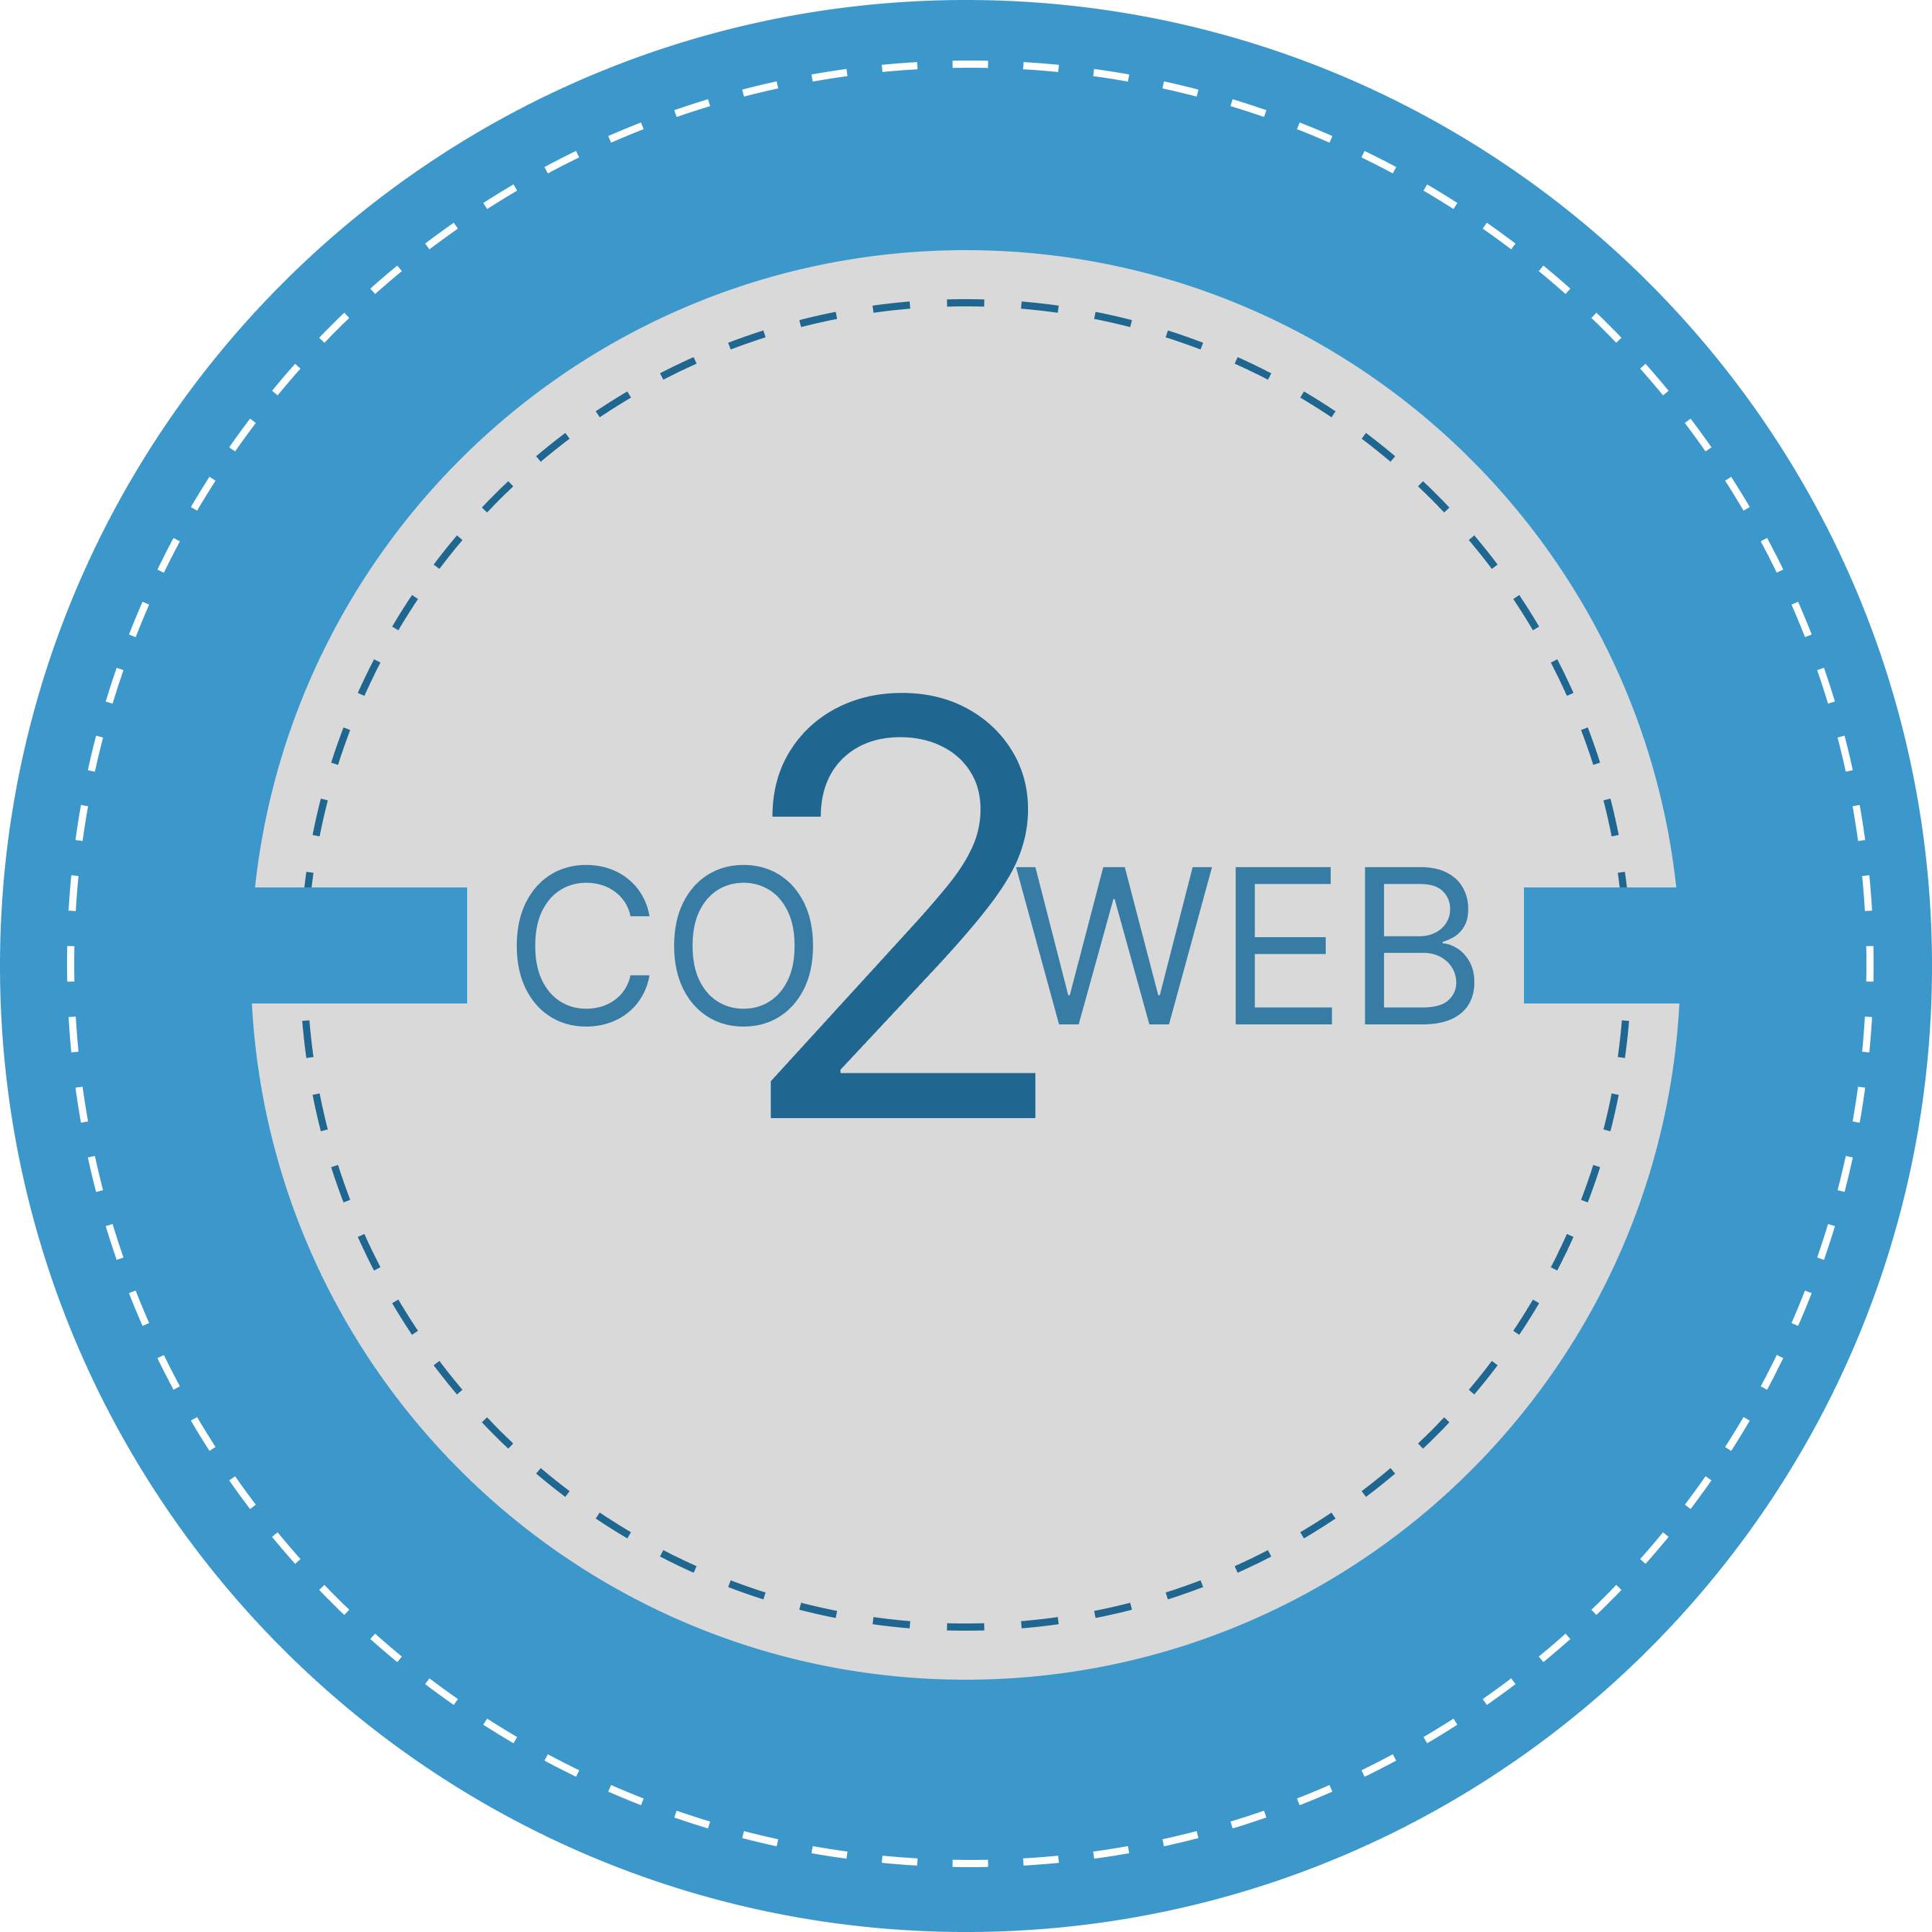 Co2web Støtter